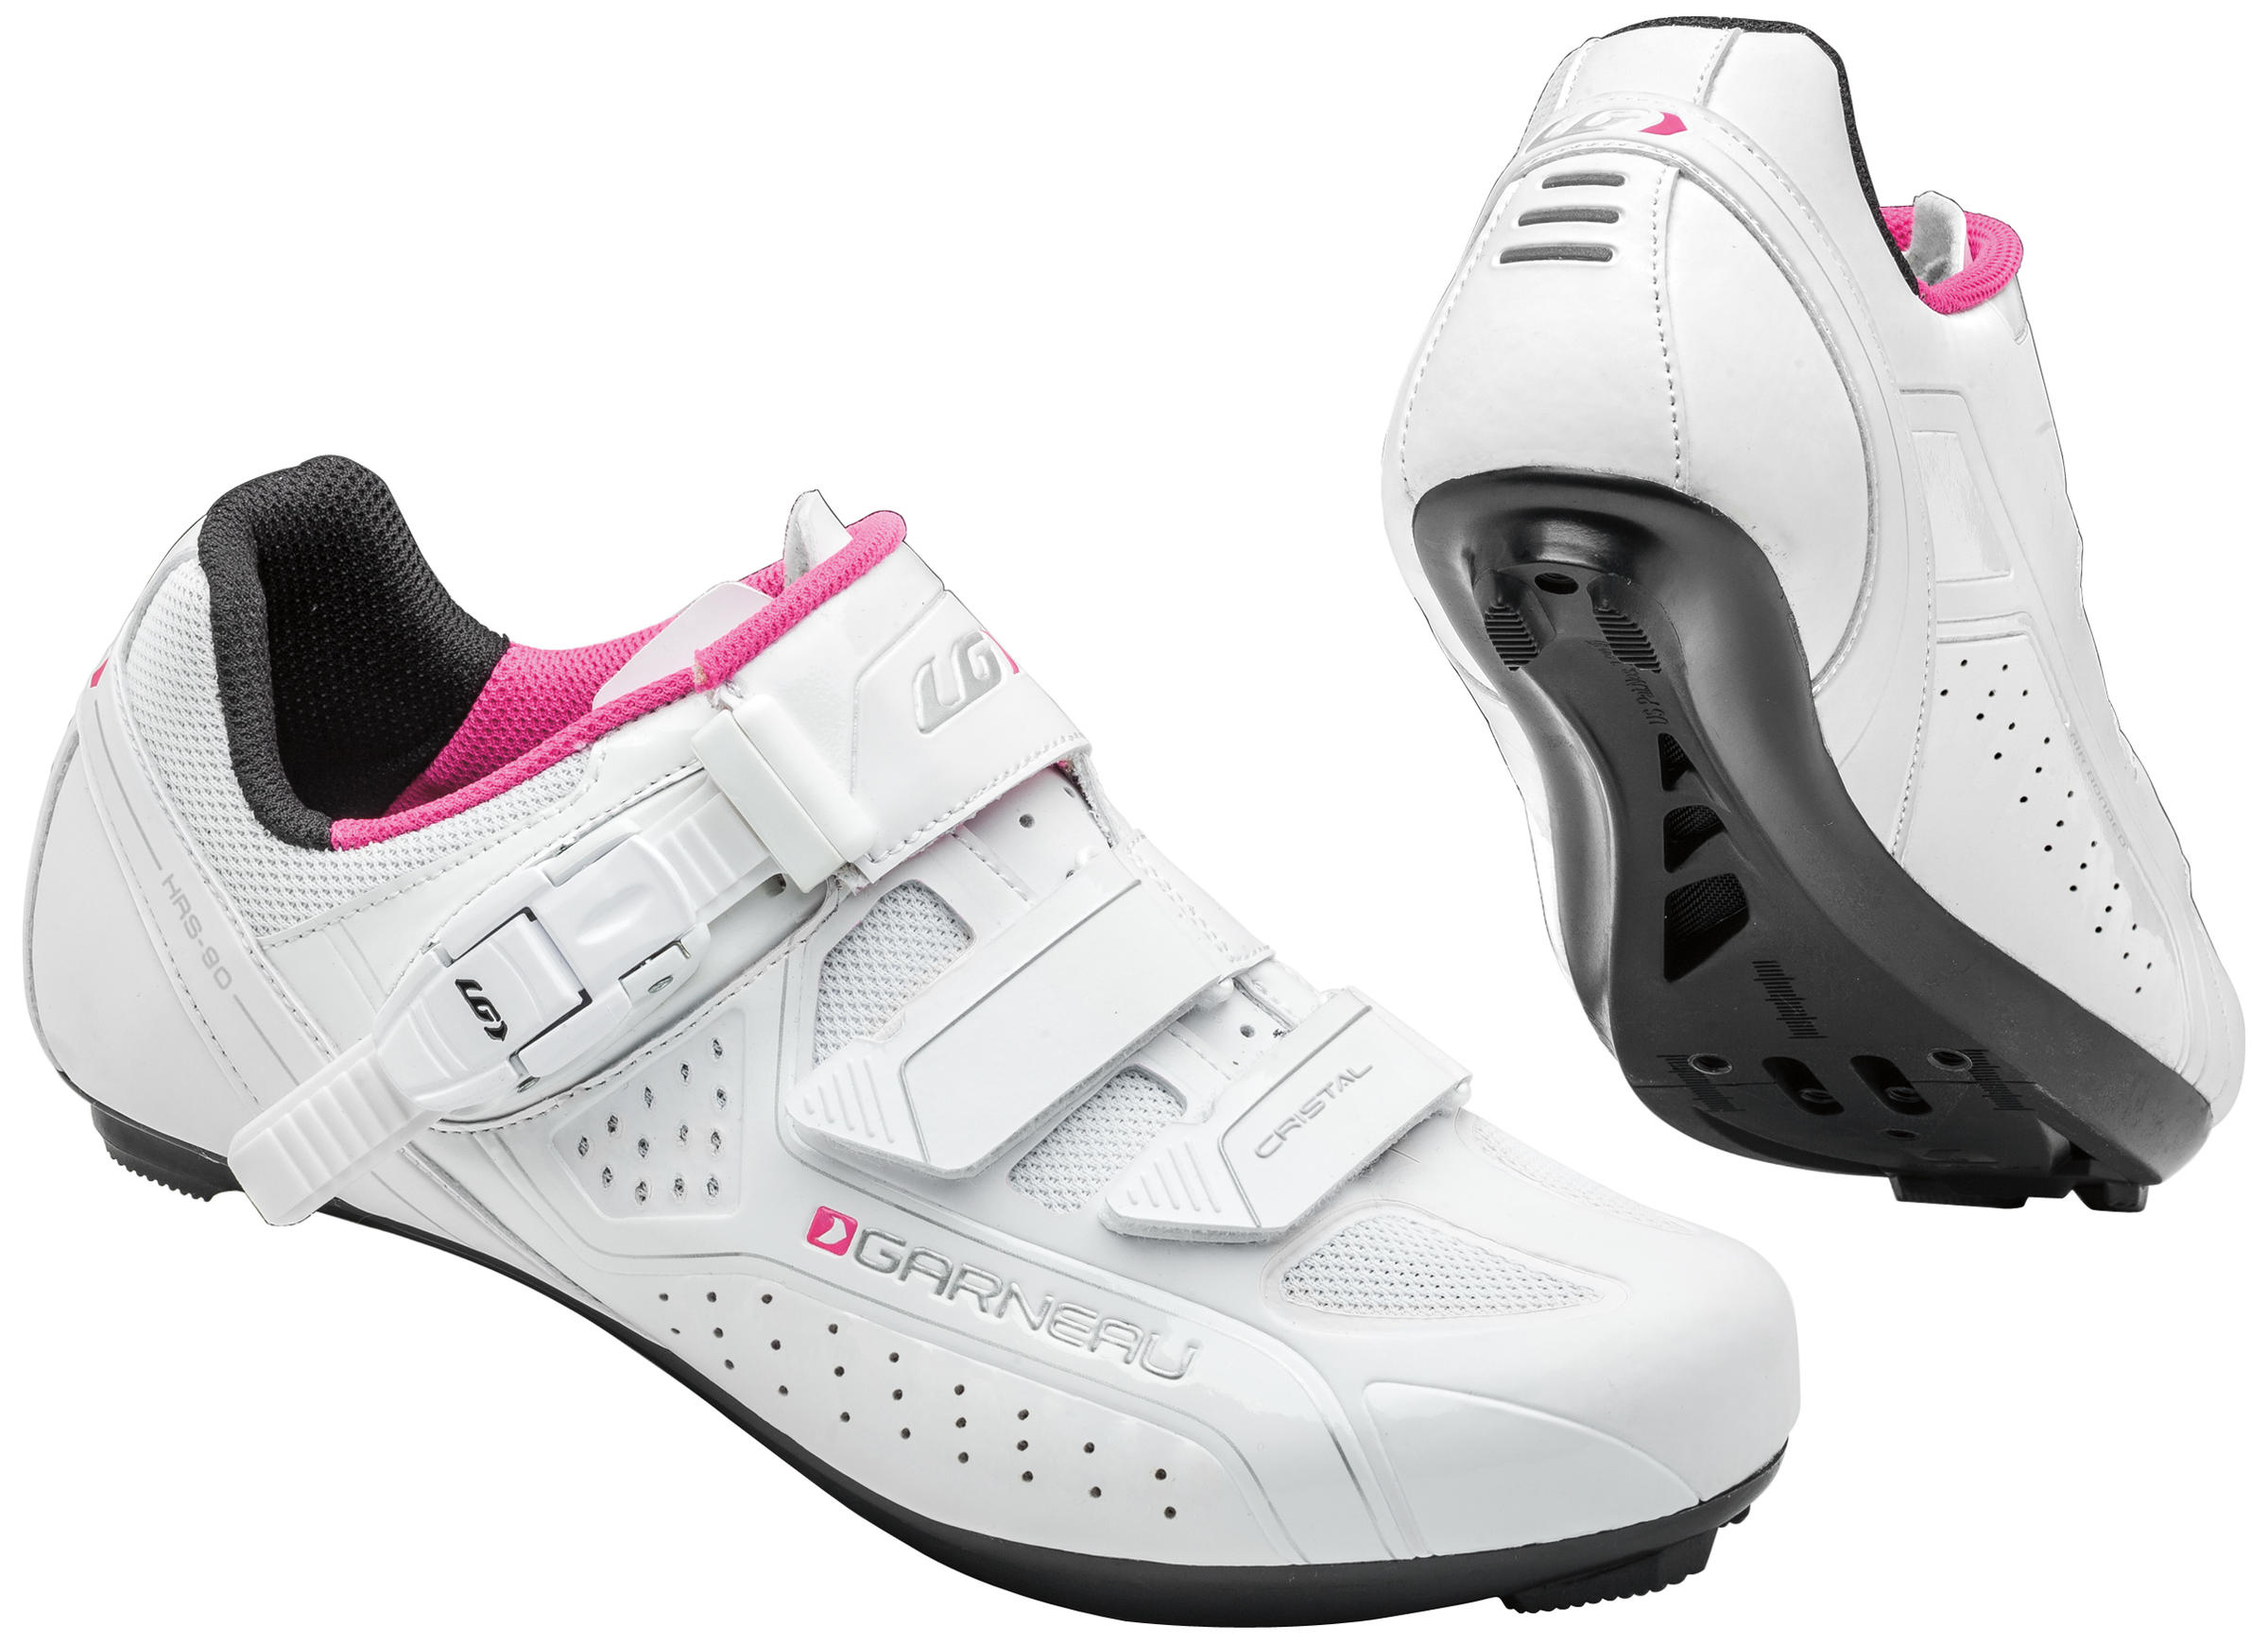 Louis Garneau Cristal Cycling Shoes Women’s Size US 10.5 White Pink Black  HRS-90